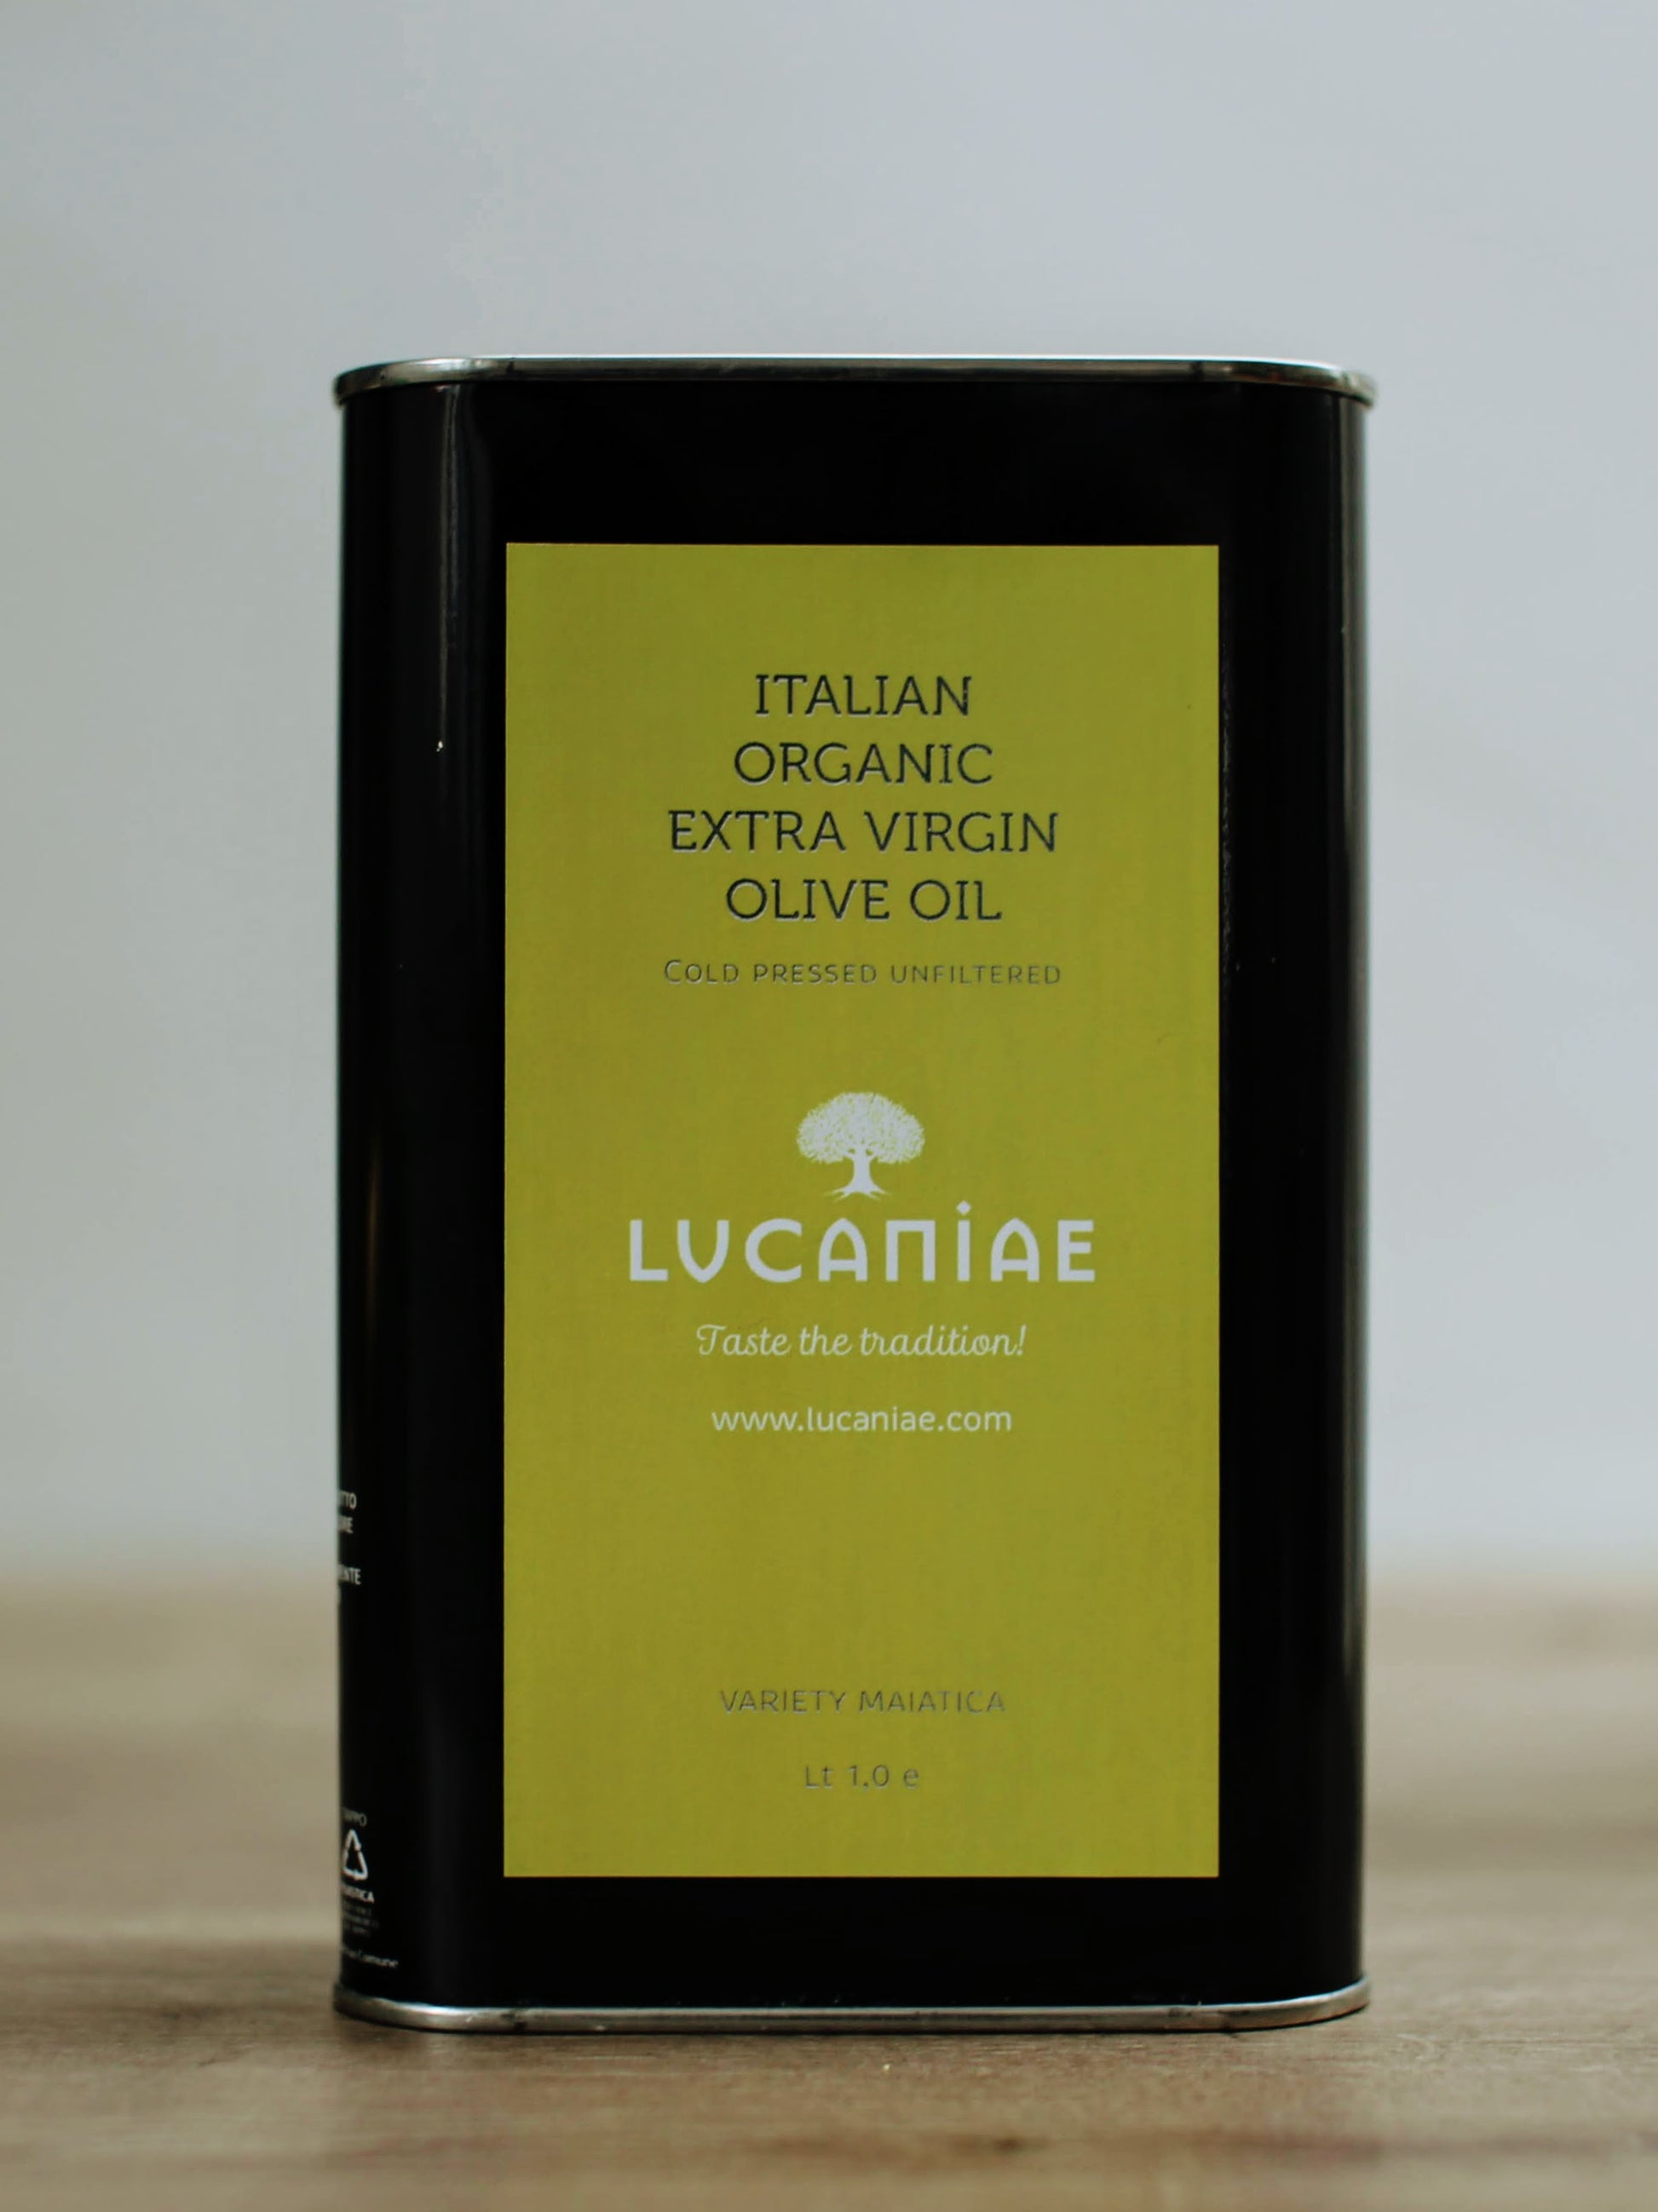 Lucaniae extra virgin olive oil 1.0 liter tin